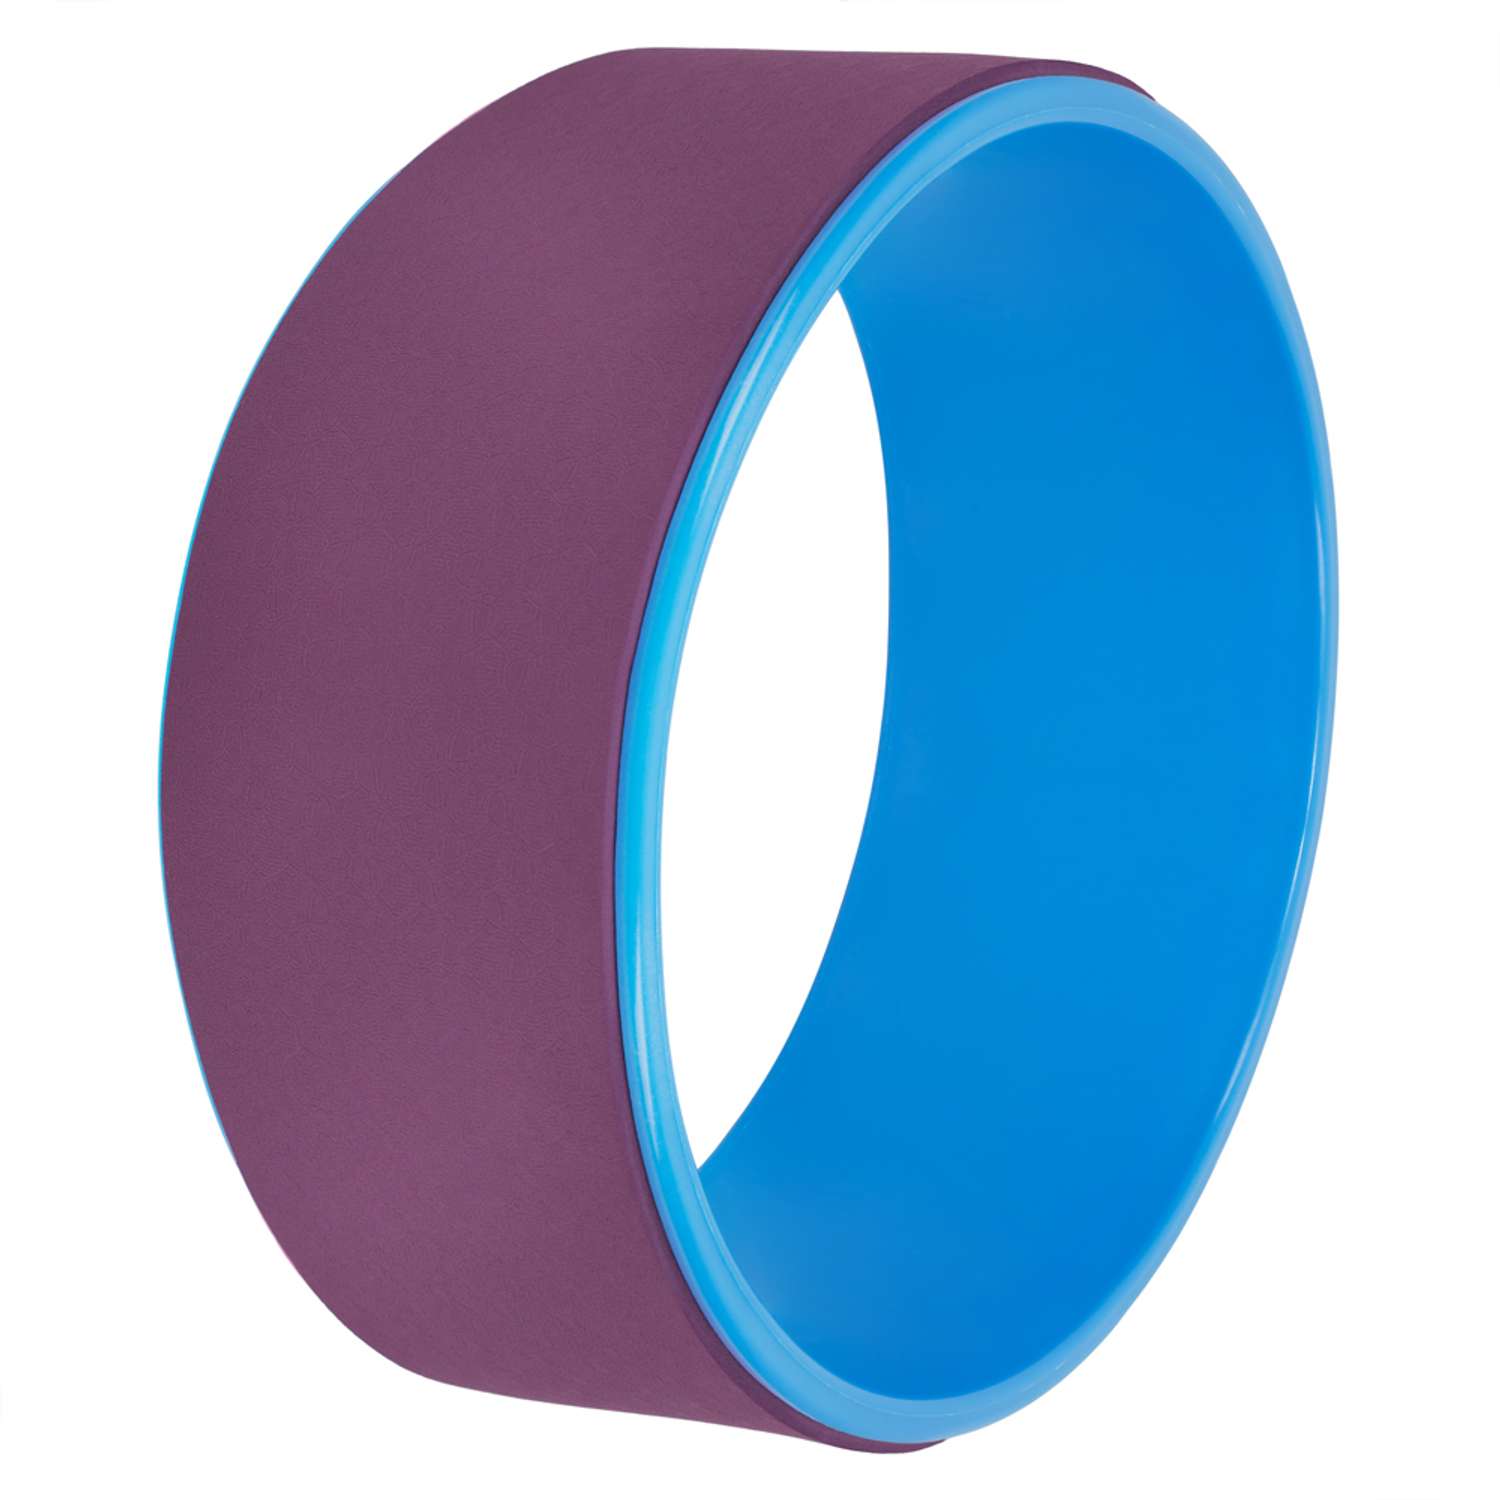 Колесо для йоги STRONG BODY фитнеса и пилатес 30 см х 12 см пурпурно-синее - фото 2